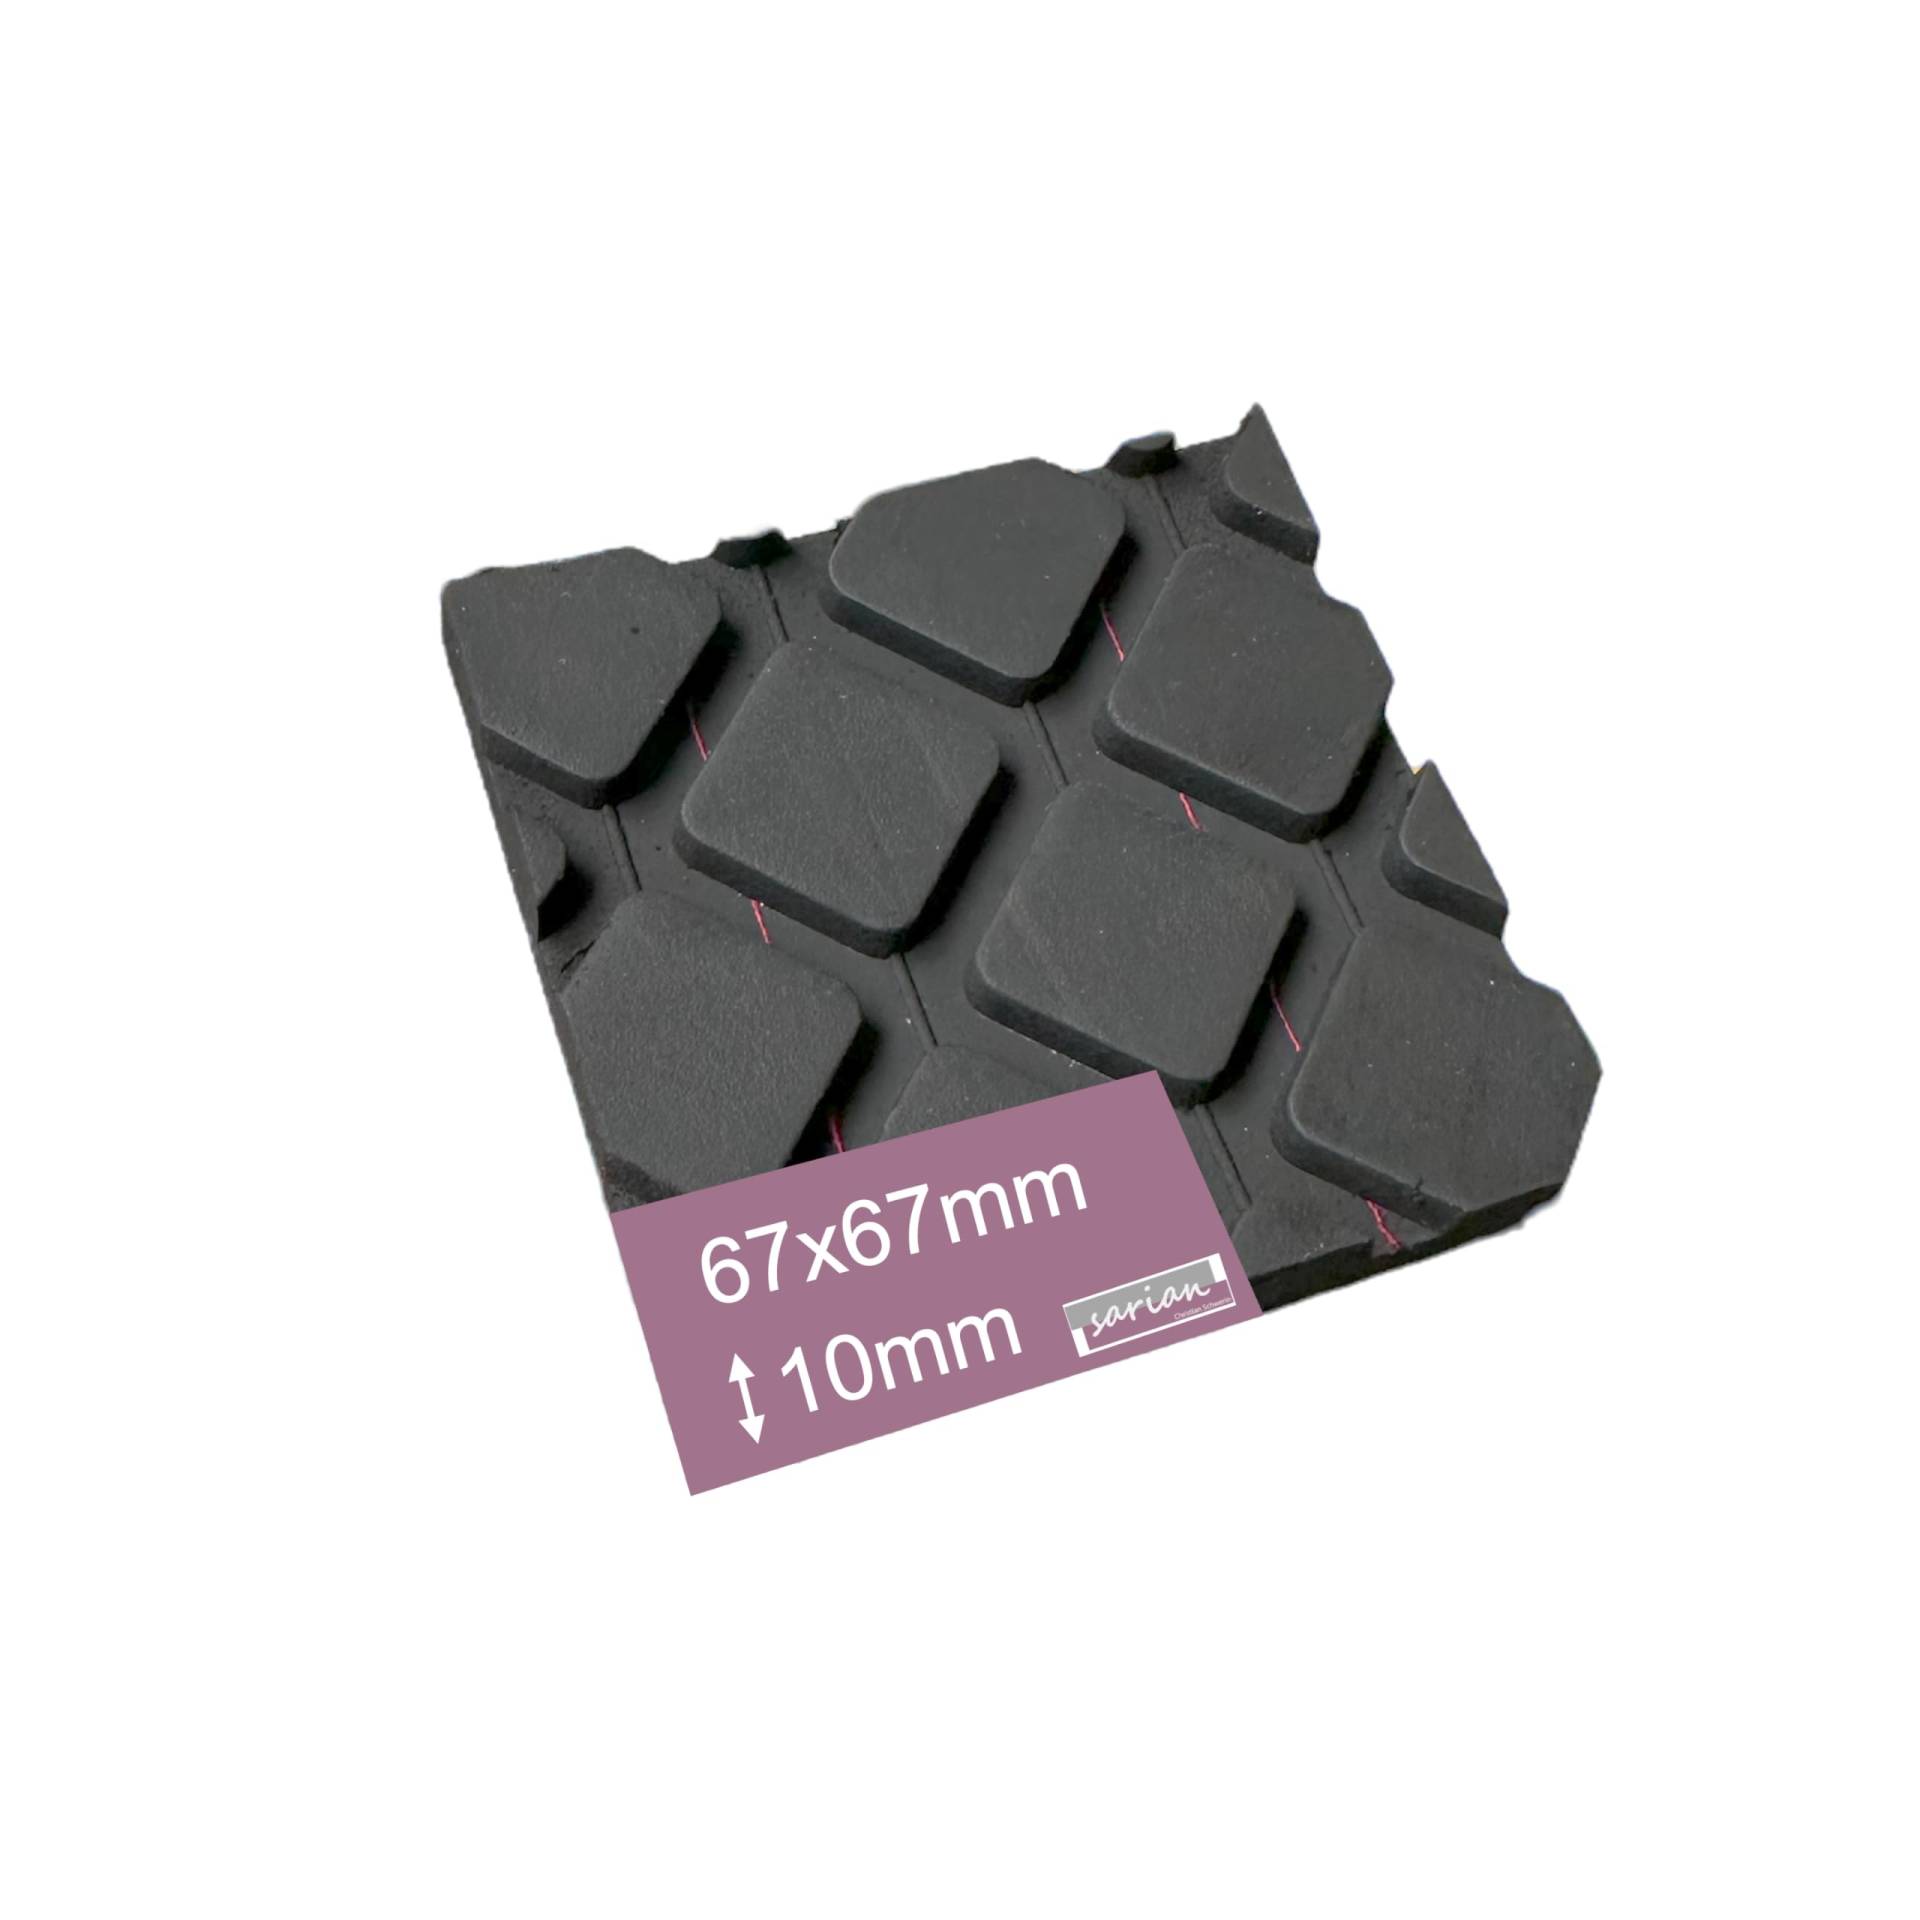 Gummiunterlage Verschiedene Größen und Stärken Gummiunterleger Gummiauflage Raute Gummipuffer (1 Stück, 67x67x10mm) von sarian